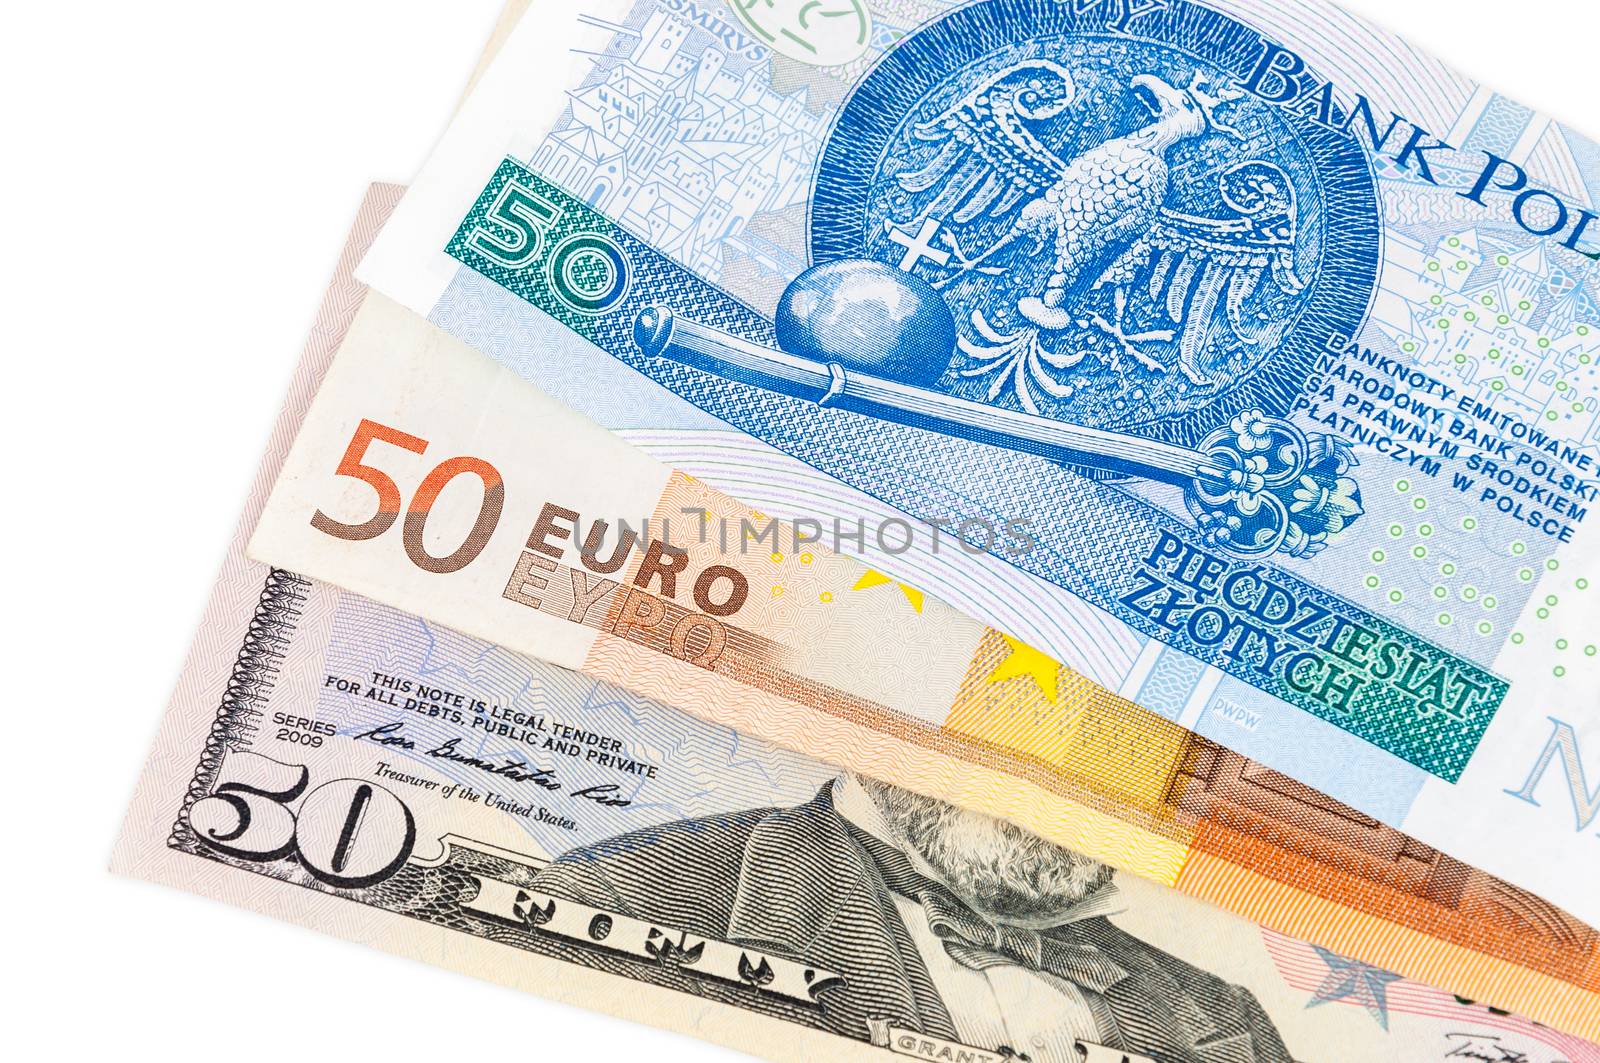 Banknotes of 50 dollars euro and polish zloty by mkos83